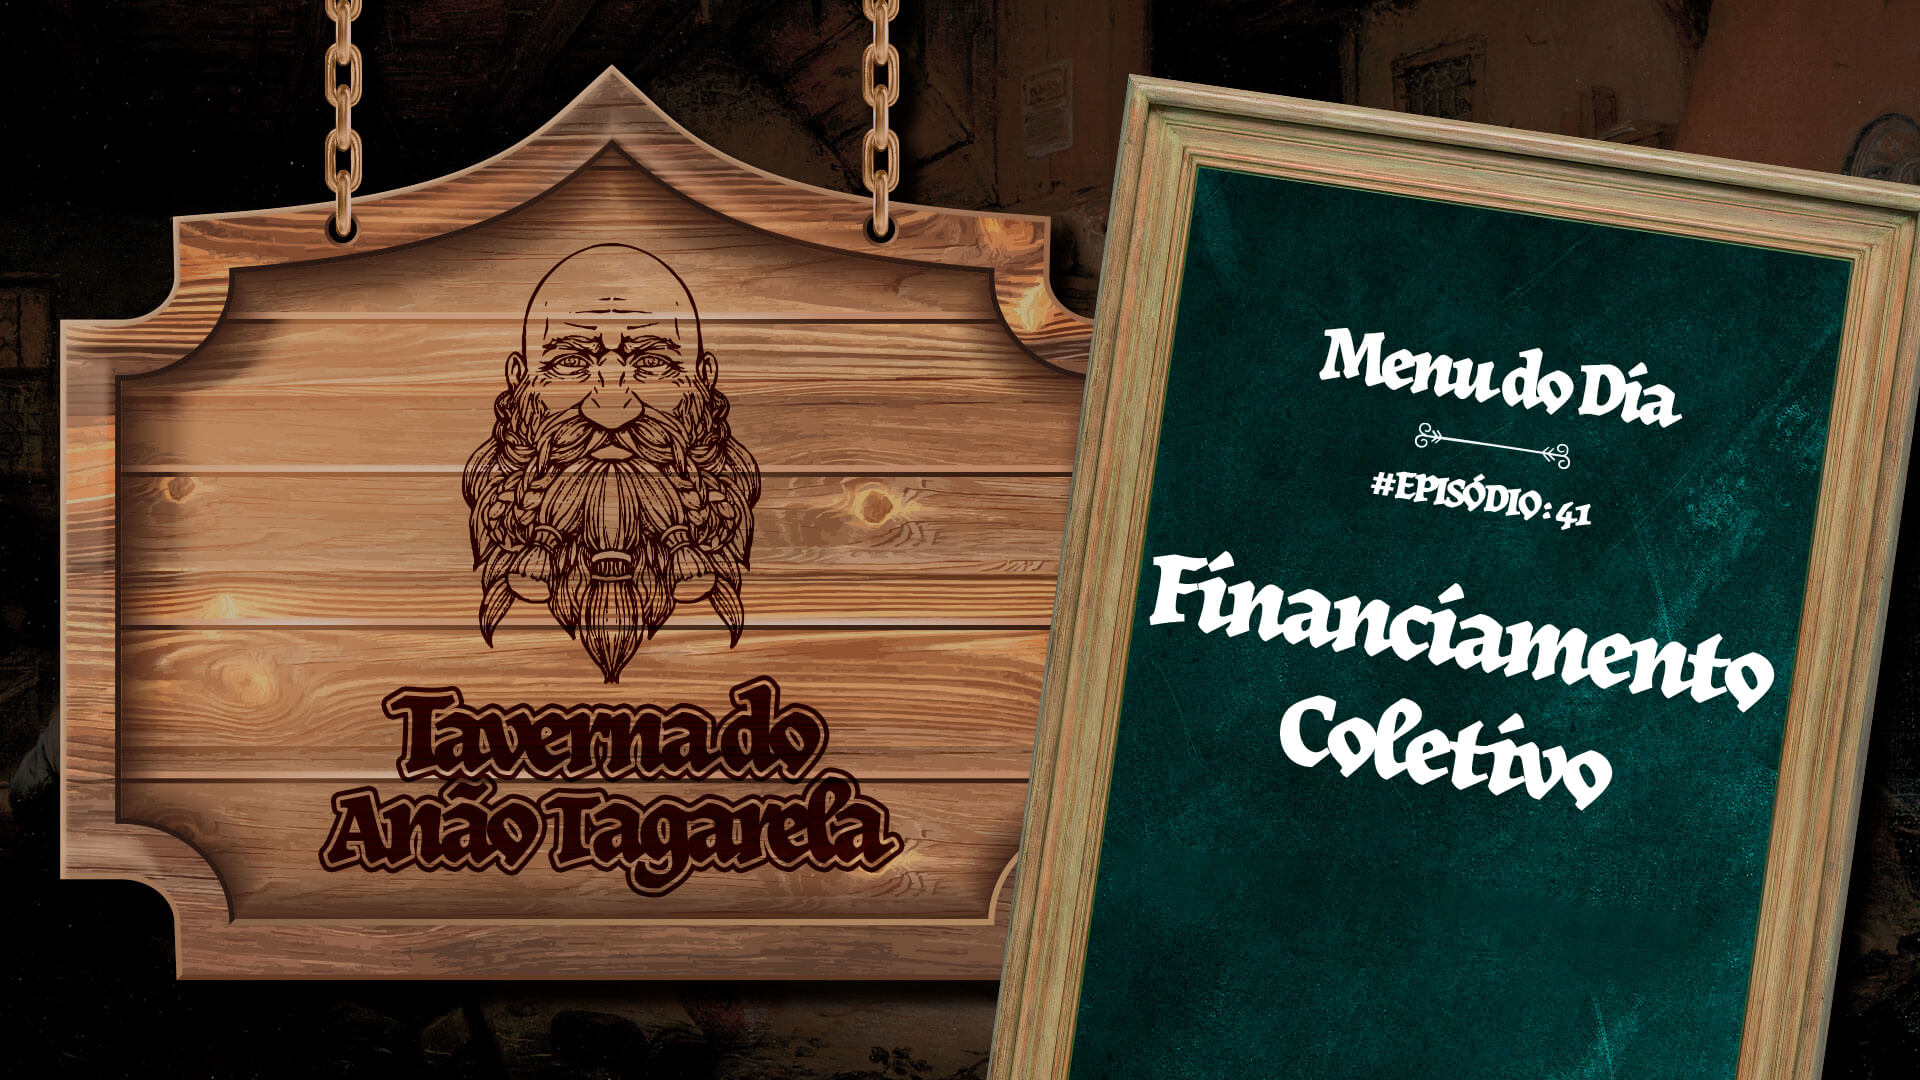 Financiamento Coletivo – Taverna do Anão Tagarela #41